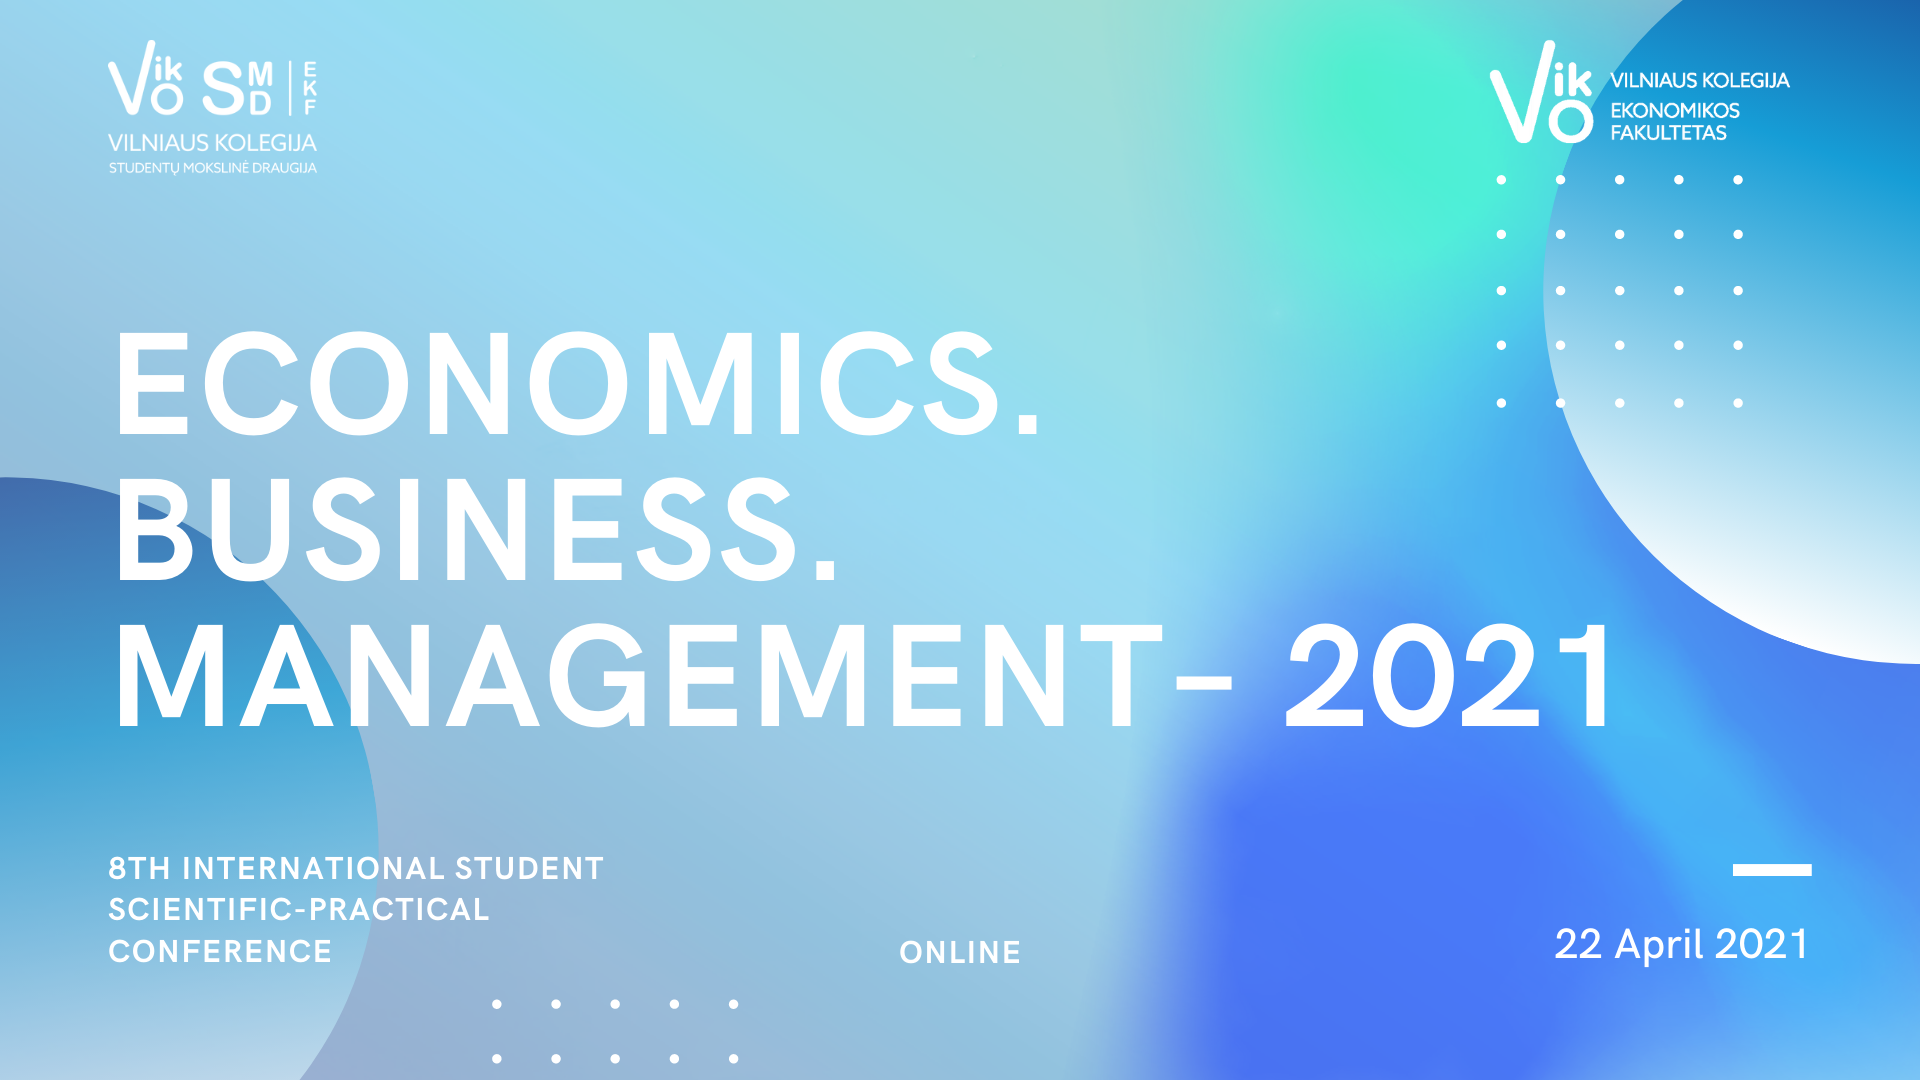  ვილნიუსის გამოყენებითი მეცნიერების უნივერსიტეტის საერთაშორისო სტუდენტური კონფერენცია, 2021